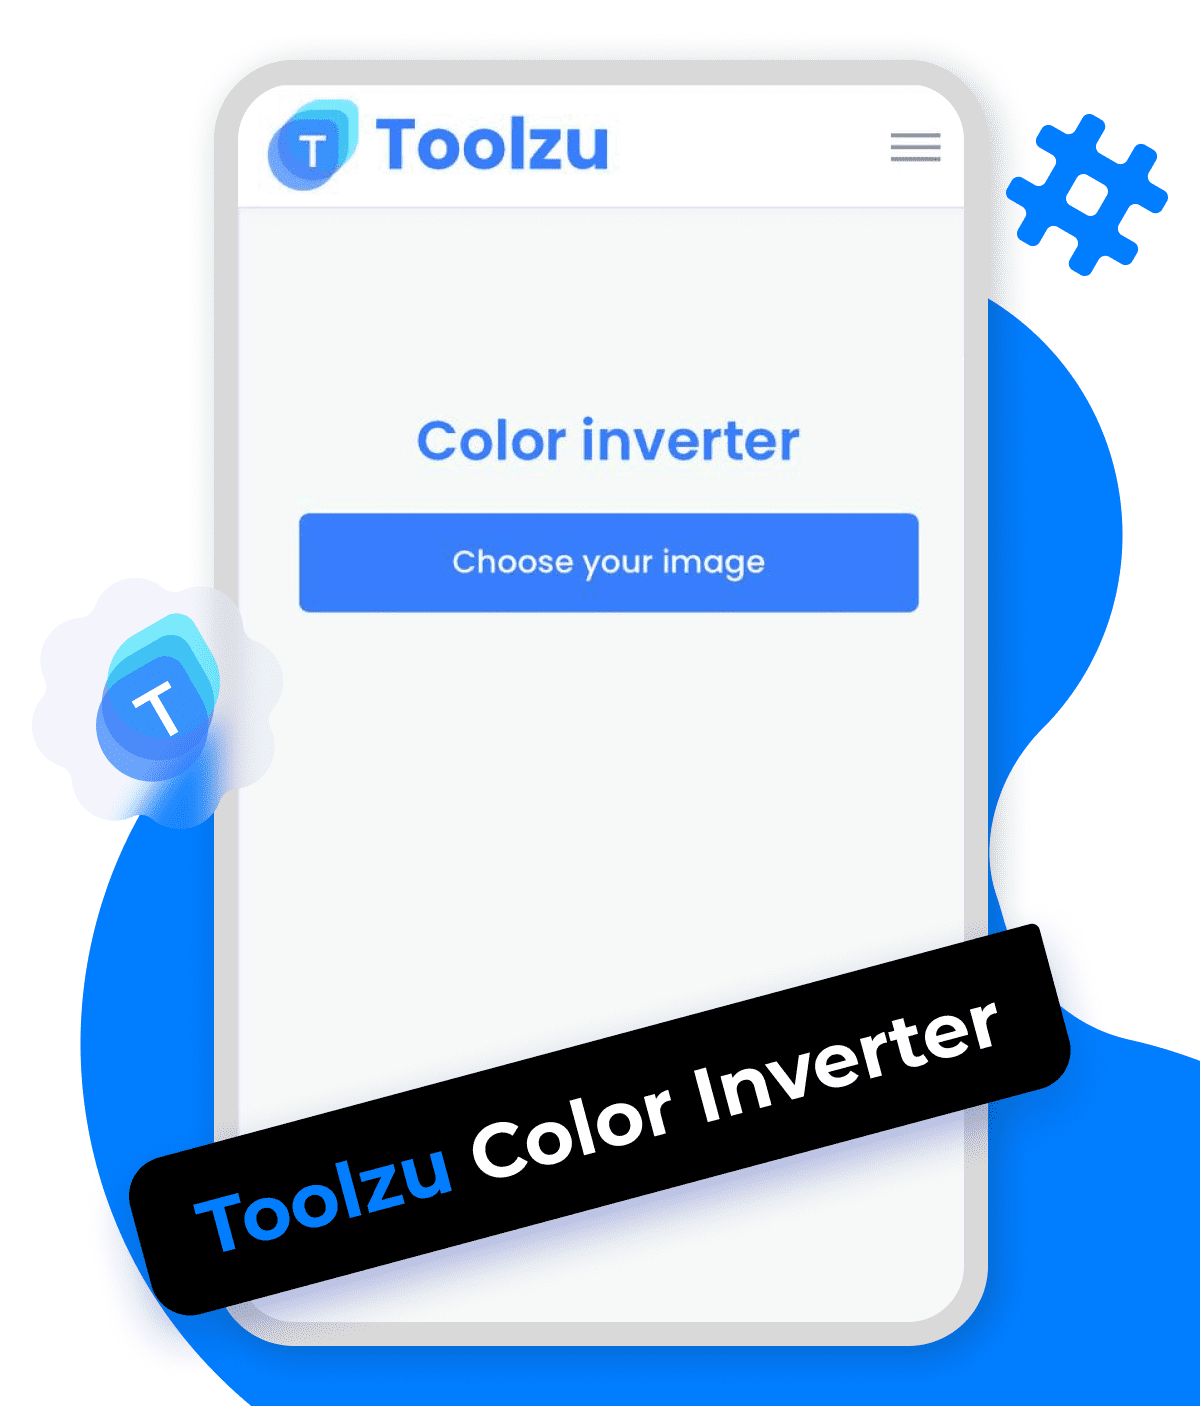 Toolzu color inverter